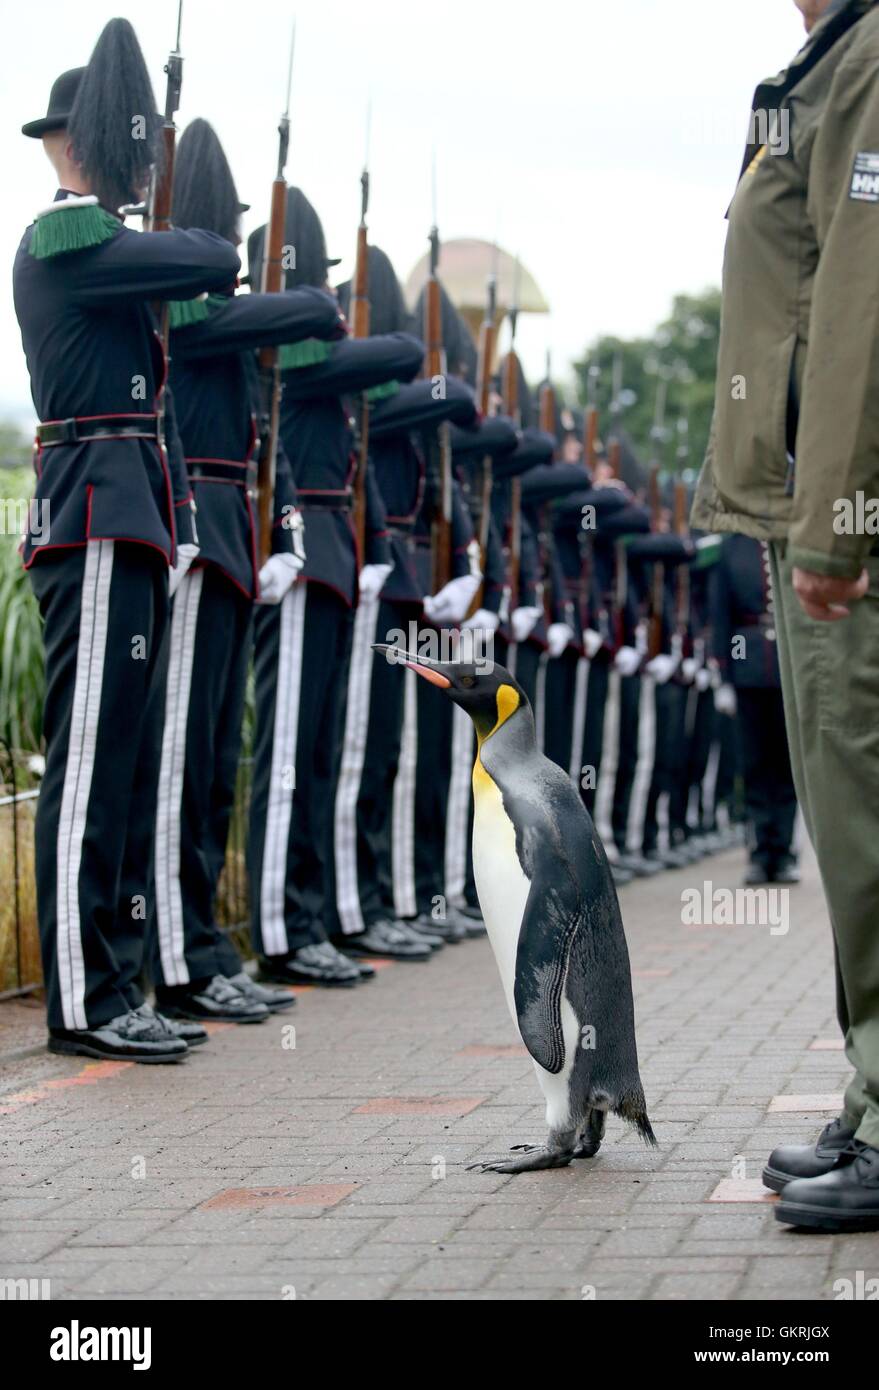 Uniformierte Soldaten der König von Norwegen Guard Parade zur Einsichtnahme durch ihr Maskottchen, König Pinguin Nils Olaf, ein Ritterschlag in 2008 um RZSS Edinburgh Zoo, verliehen wurde, wie sie des Pinguins Förderung und neue Titel von âÂ €ÂœBrigadier Sir Nils OlavâÂ verkünden €Â. Stockfoto